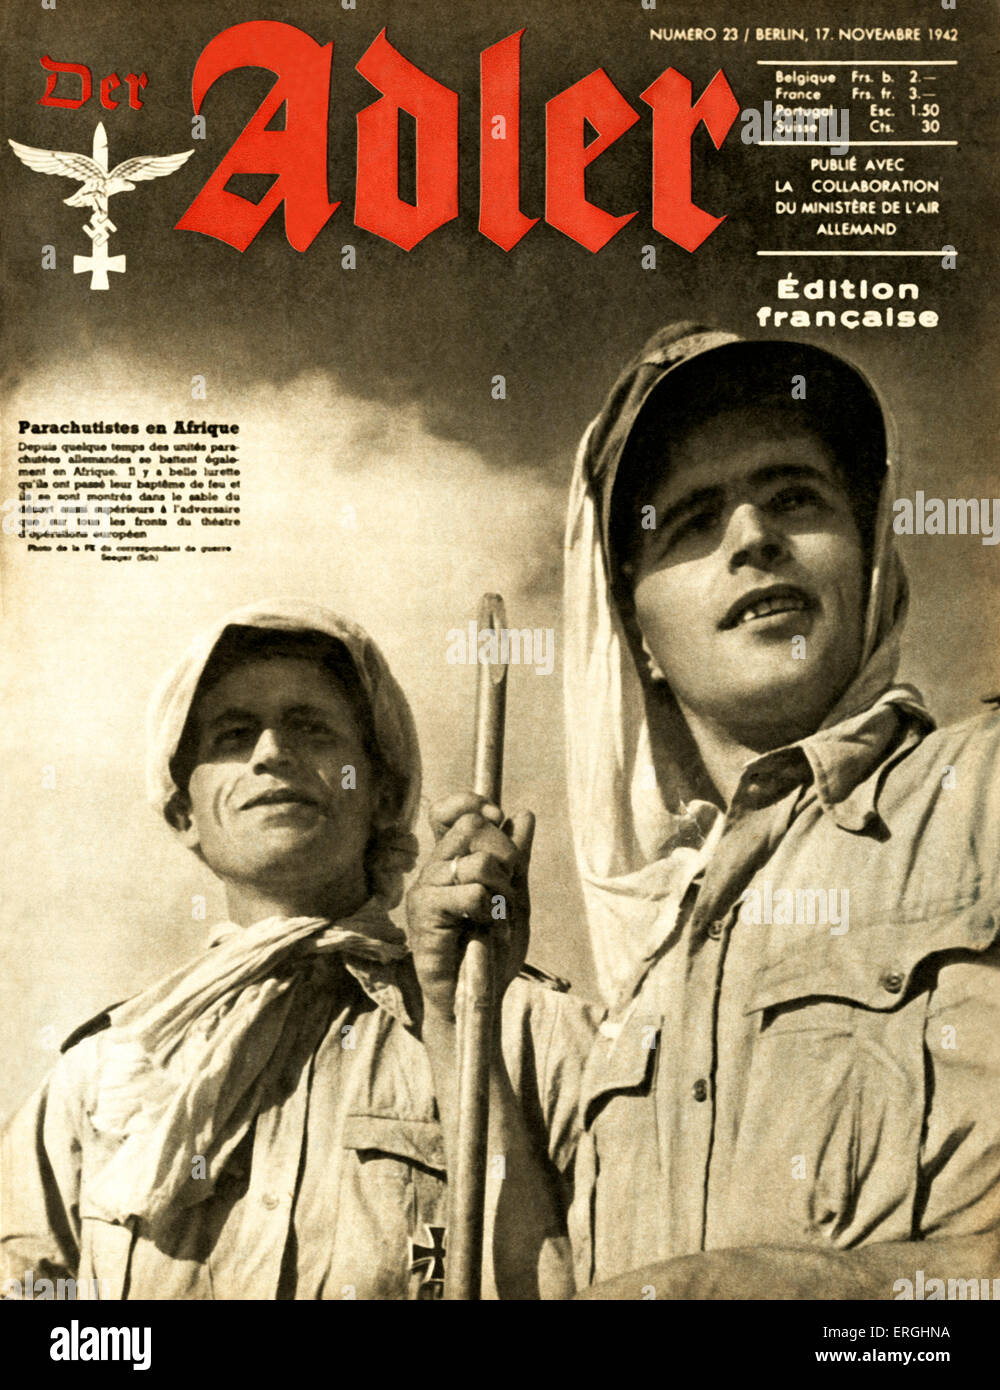 Der Adler, magazine de l'air allemande (Luftwaffe) pendant la Seconde Guerre mondiale. Couvrir du 17 novembre 1942. Édition française. L'allemand Banque D'Images